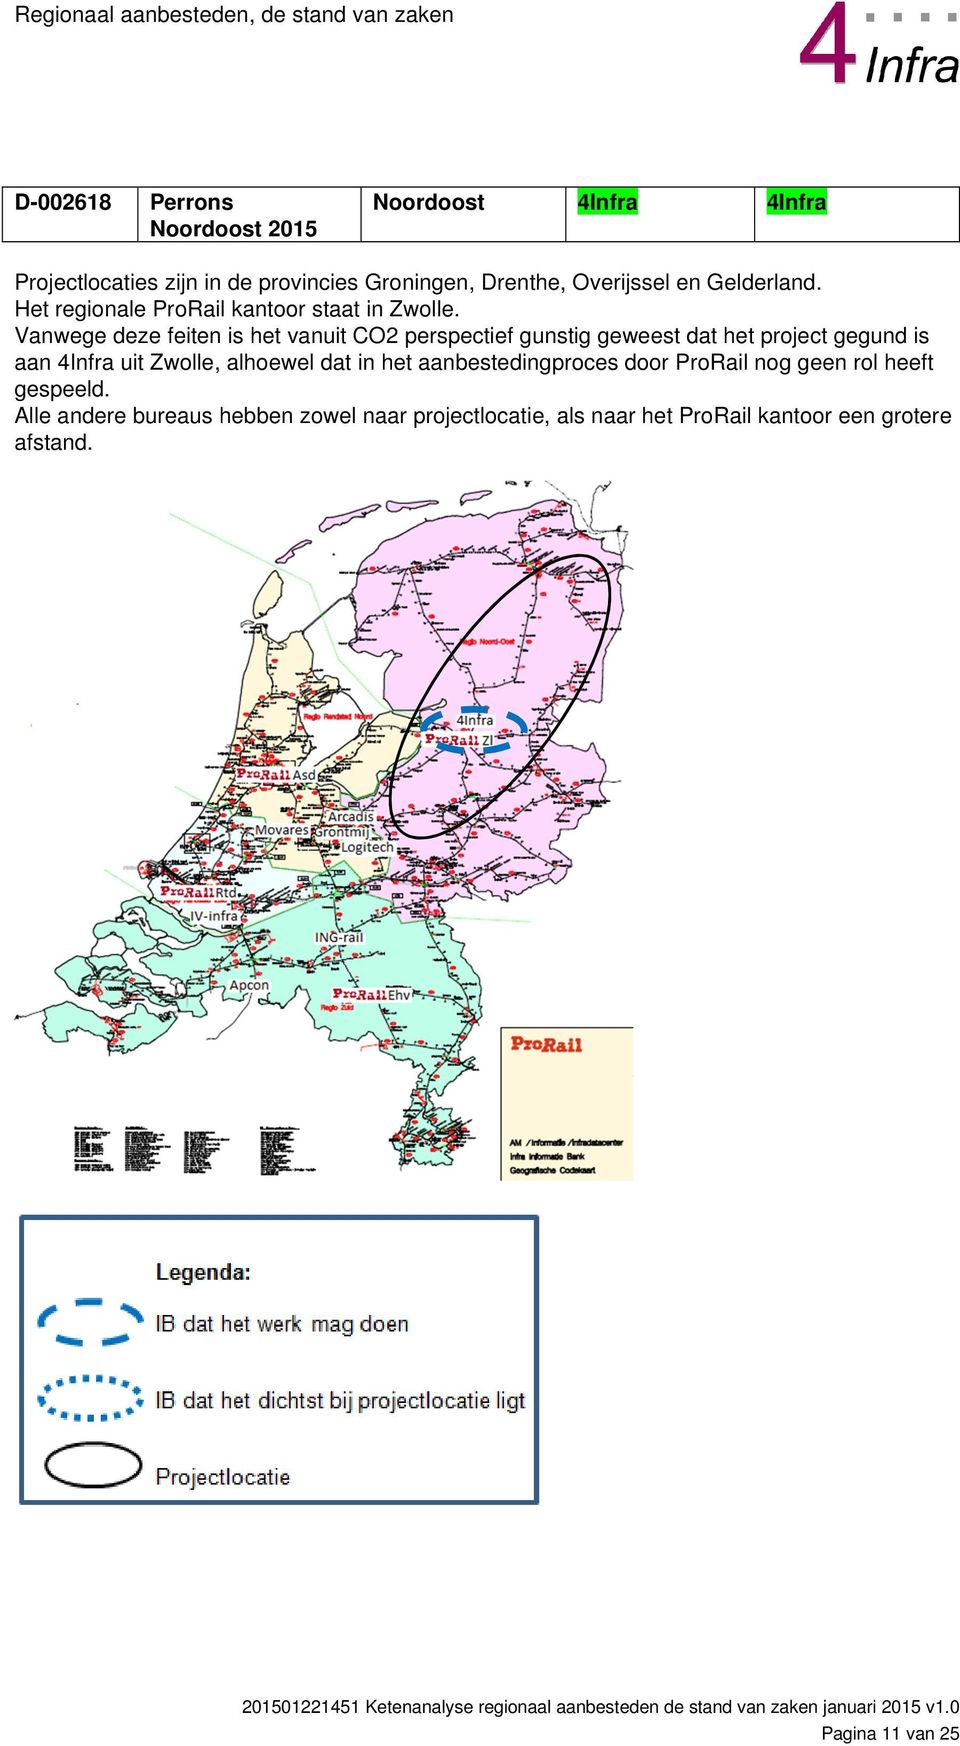 Vanwege deze feiten is het vanuit CO2 perspectief gunstig geweest dat het project gegund is aan 4Infra uit Zwolle, alhoewel